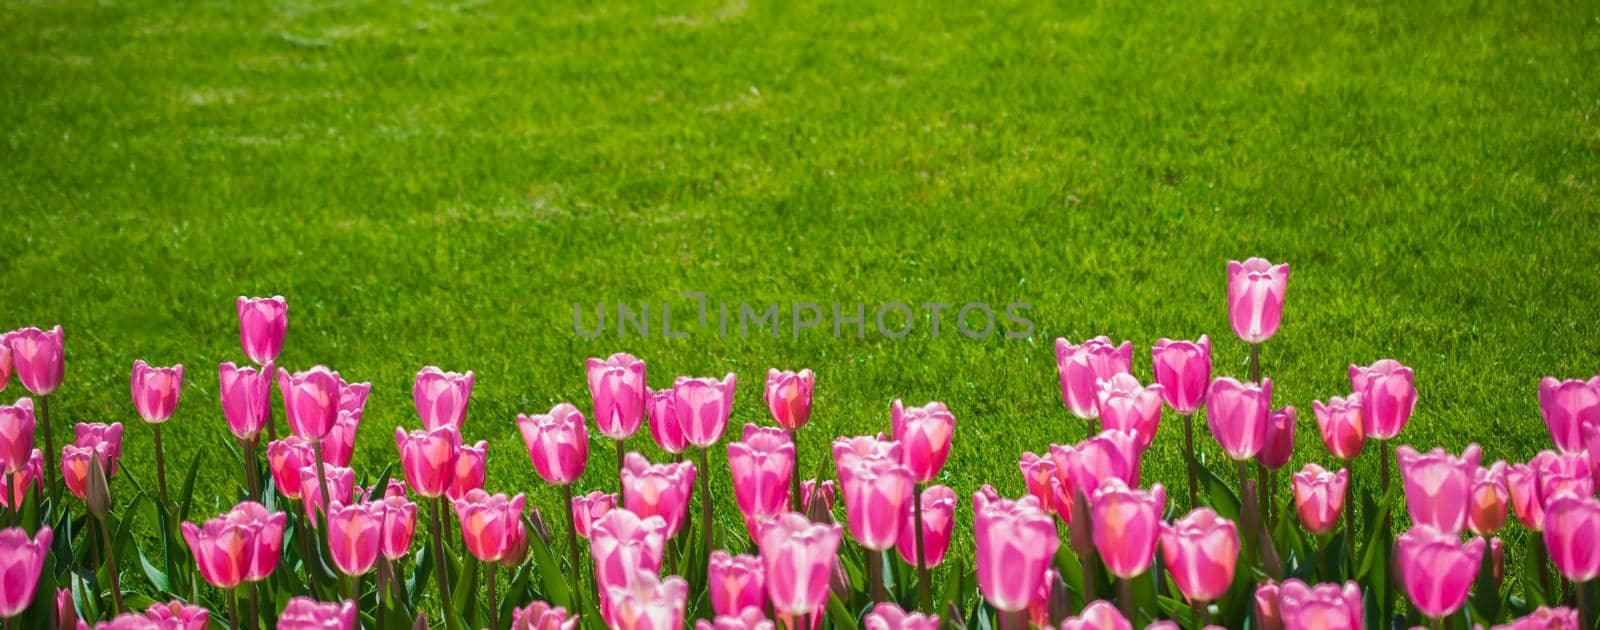 Tulips Blooming in Spring  by berkay